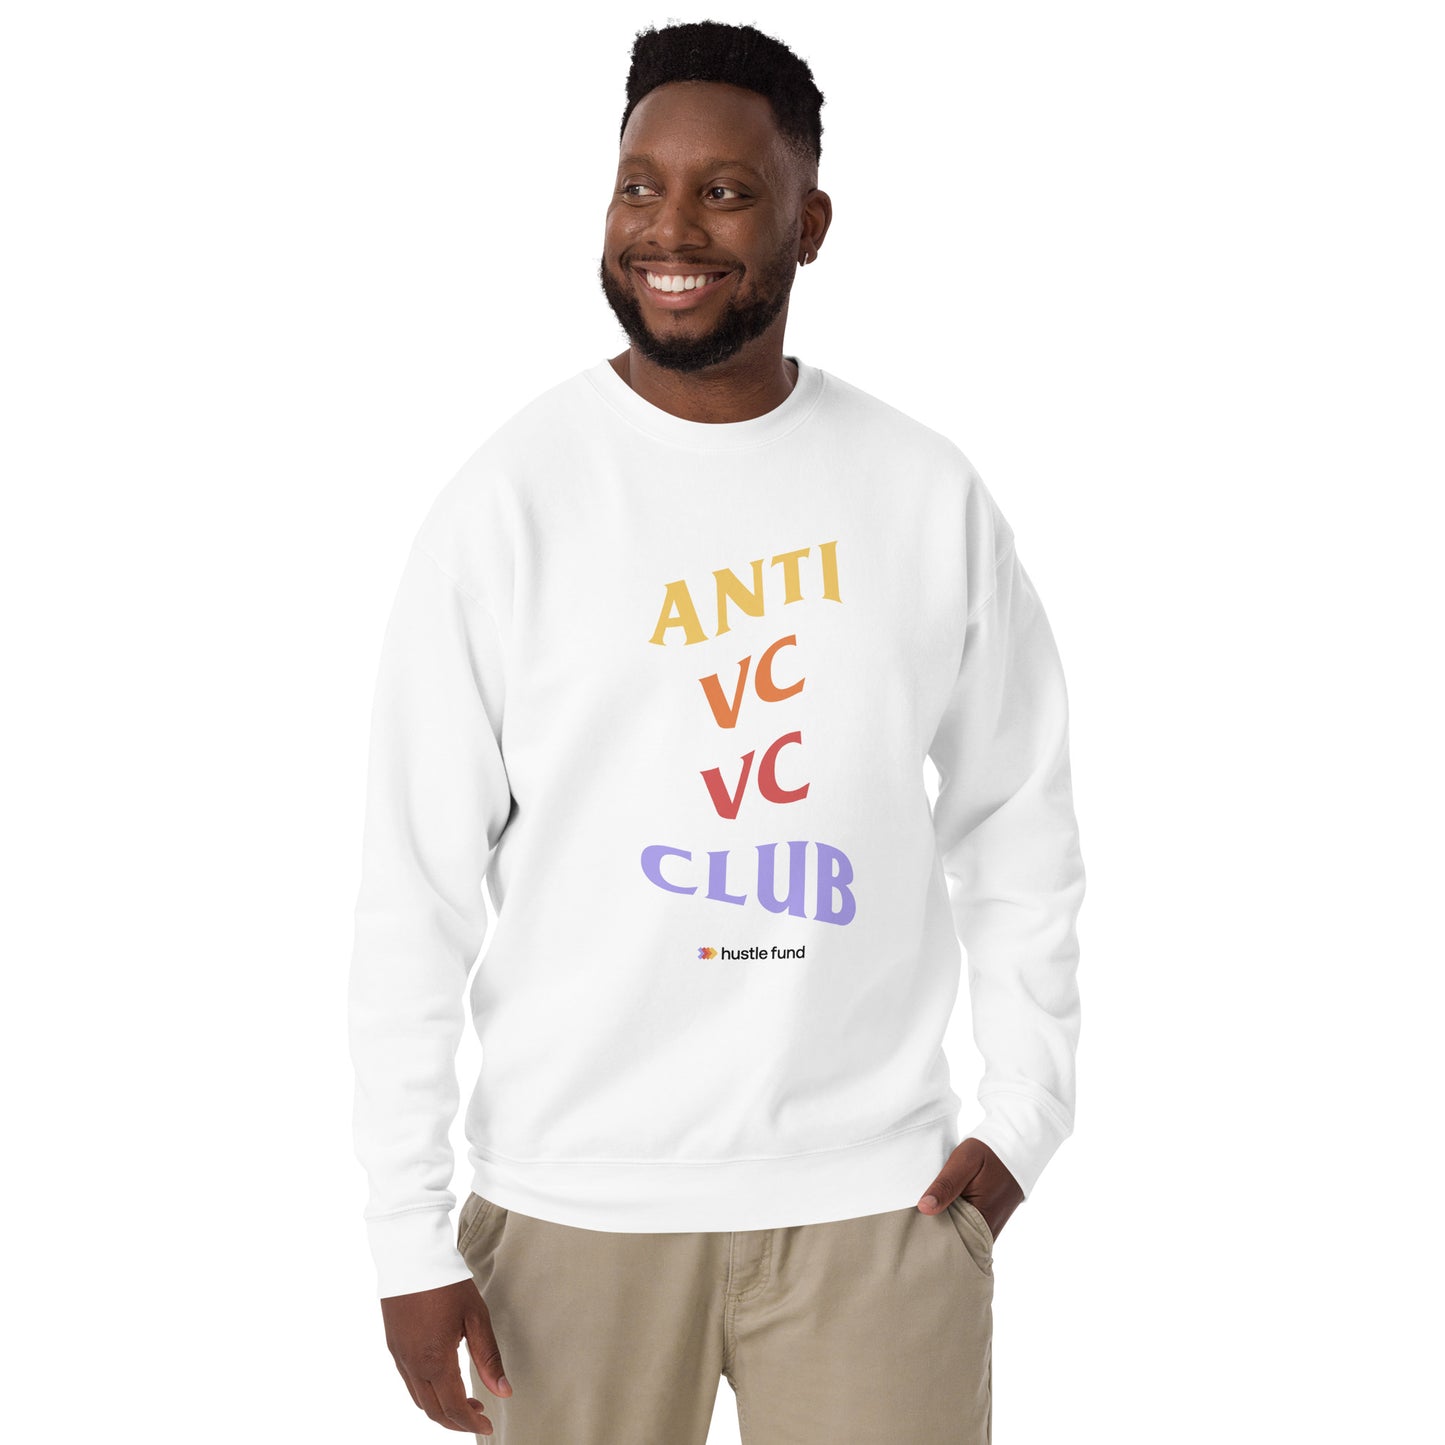 Anti VC VC Club Sweatshirt